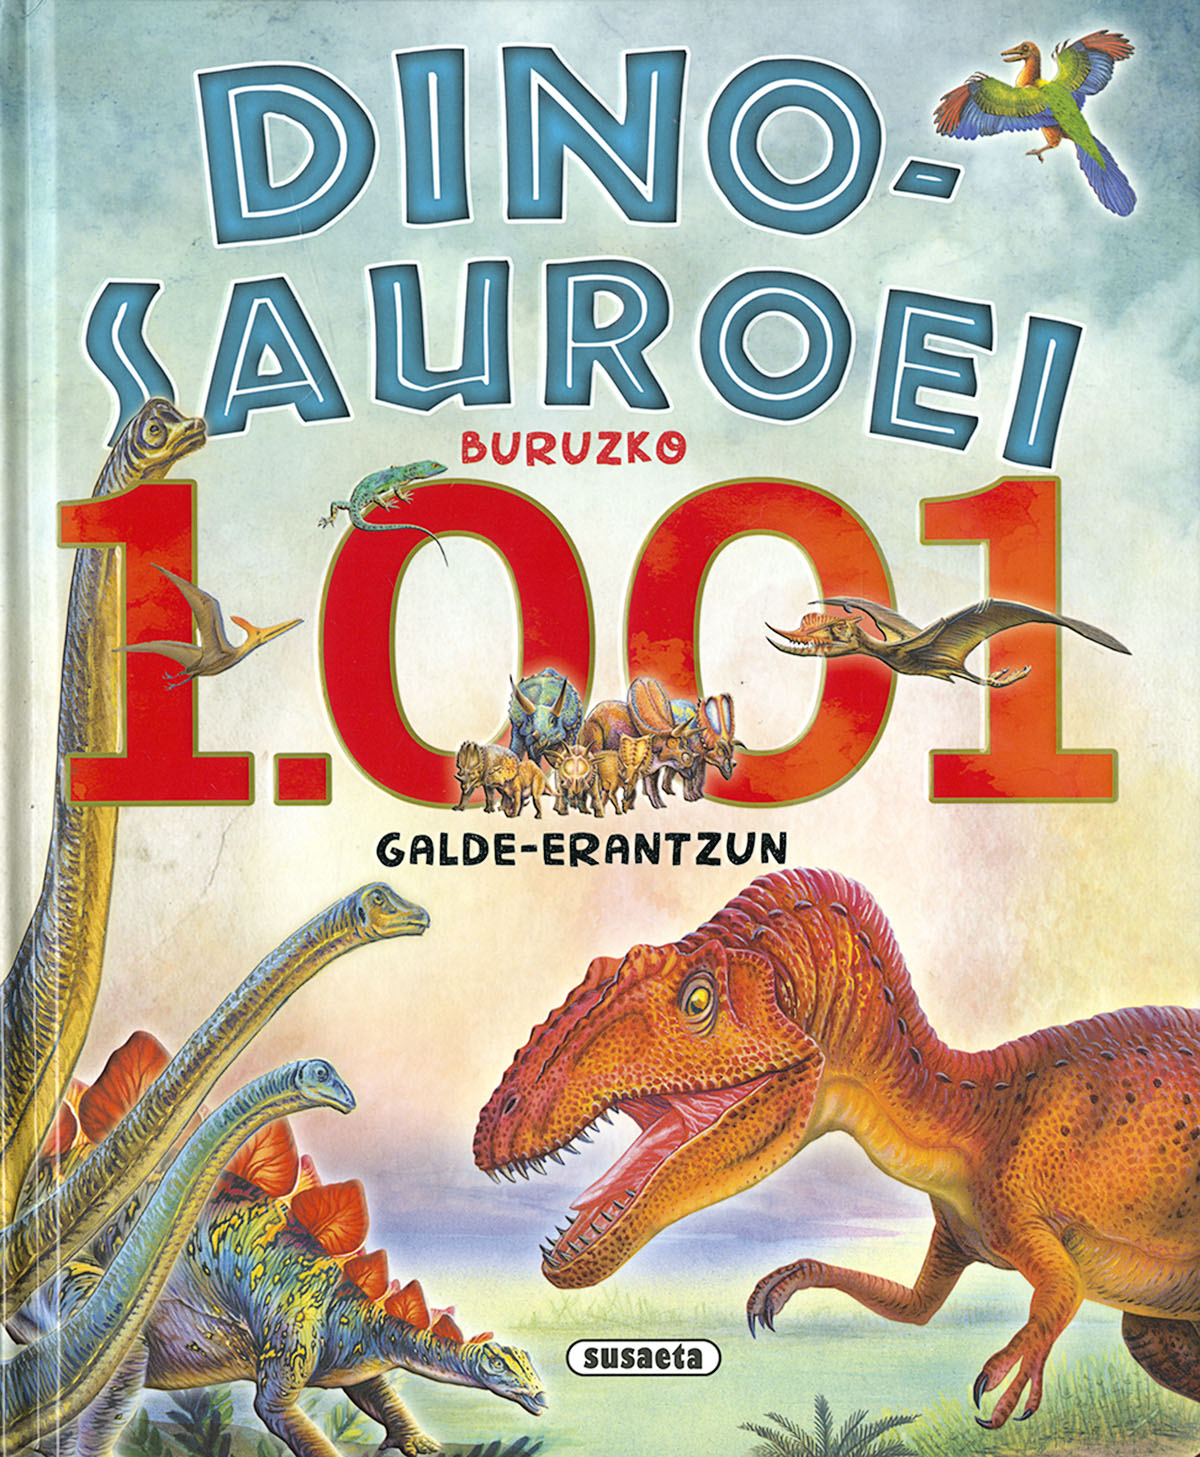 Dinosauroei buruzko 1.001 galde-erantzun